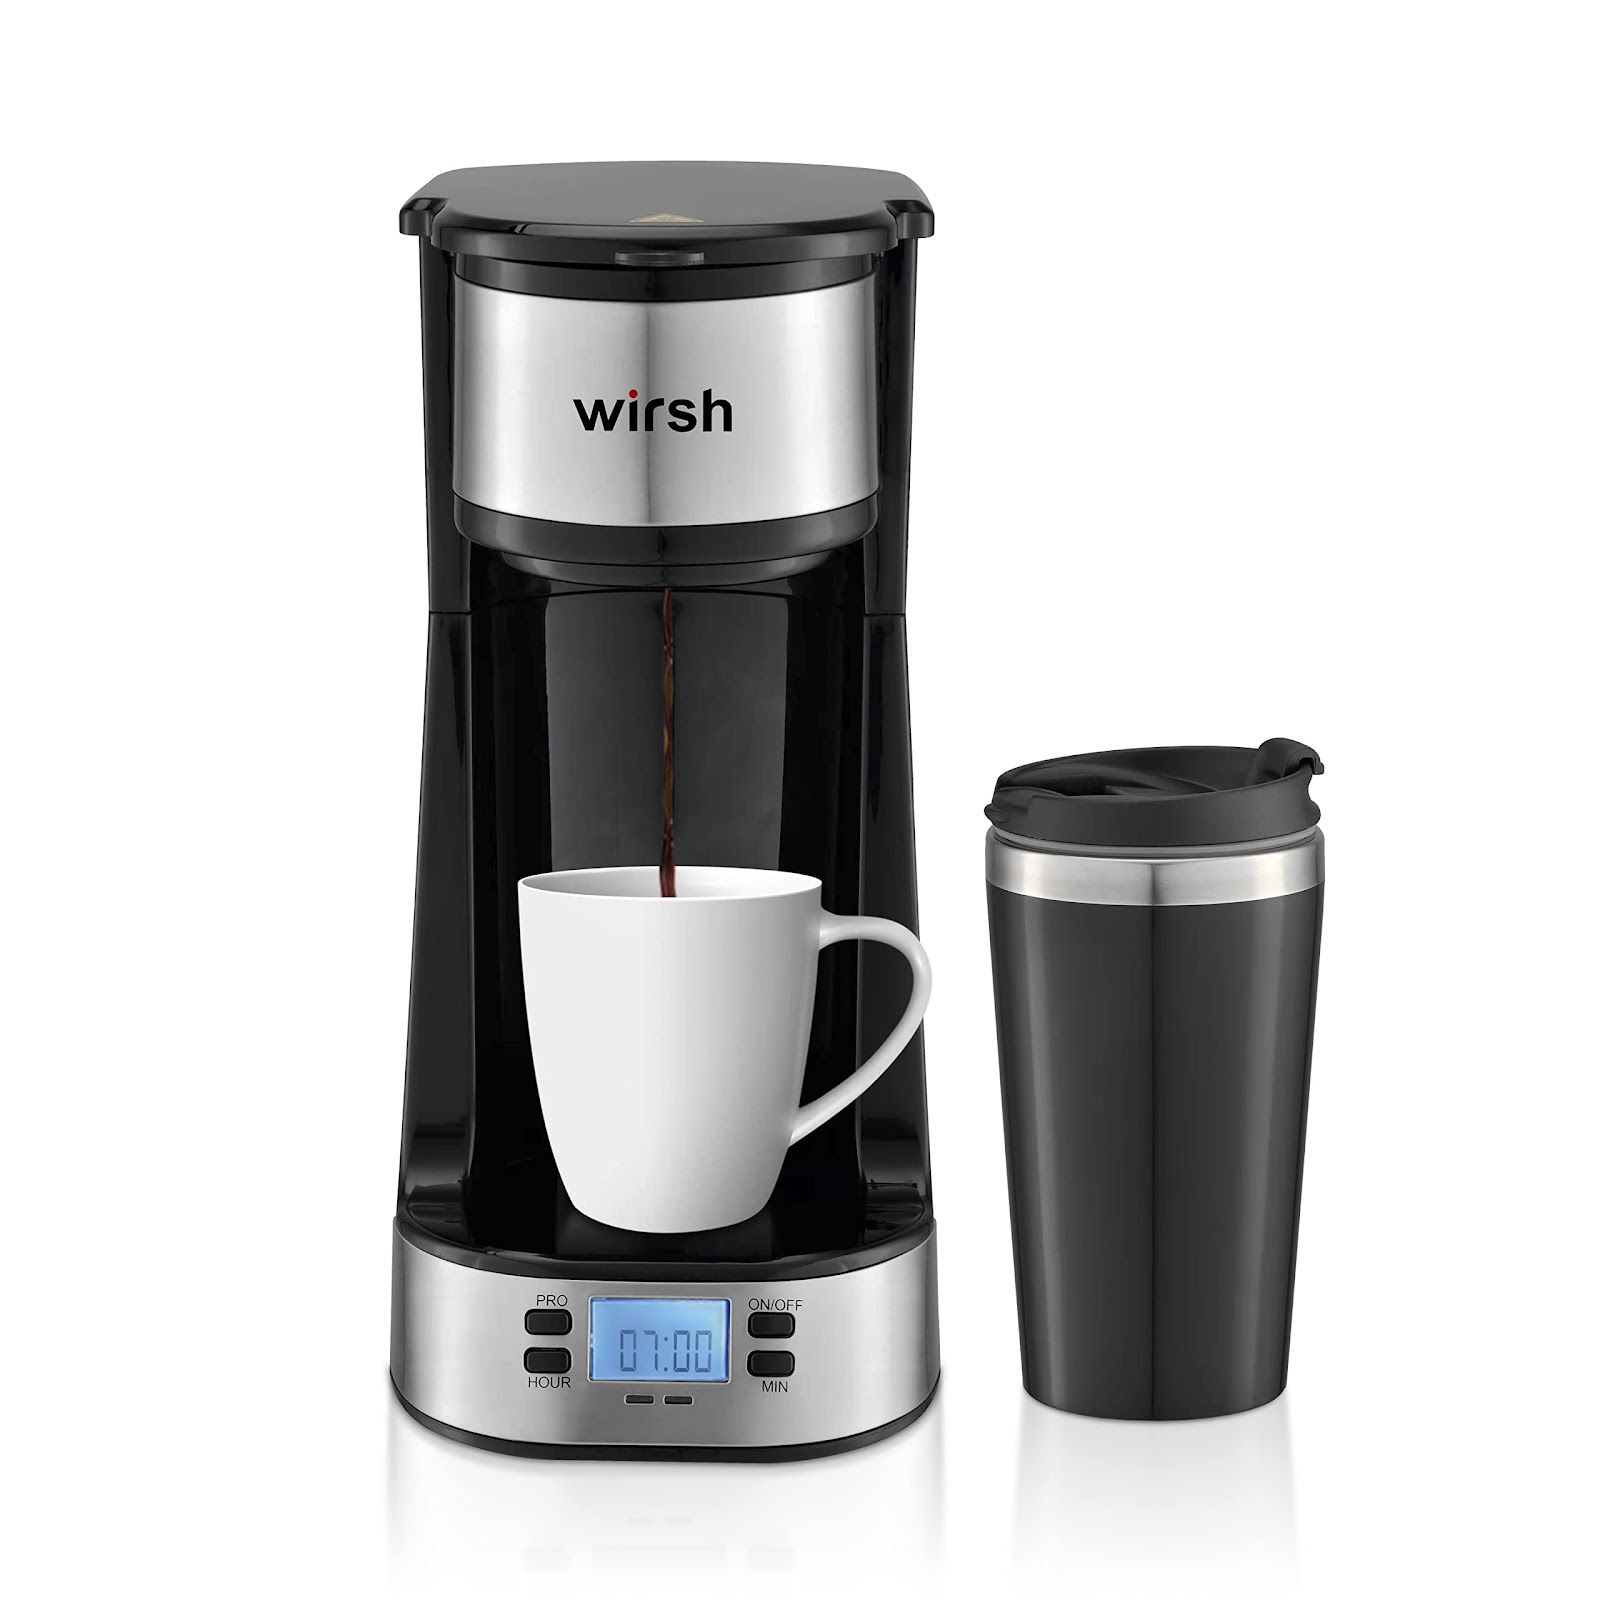 Wirsh Single Serve Coffee Maker